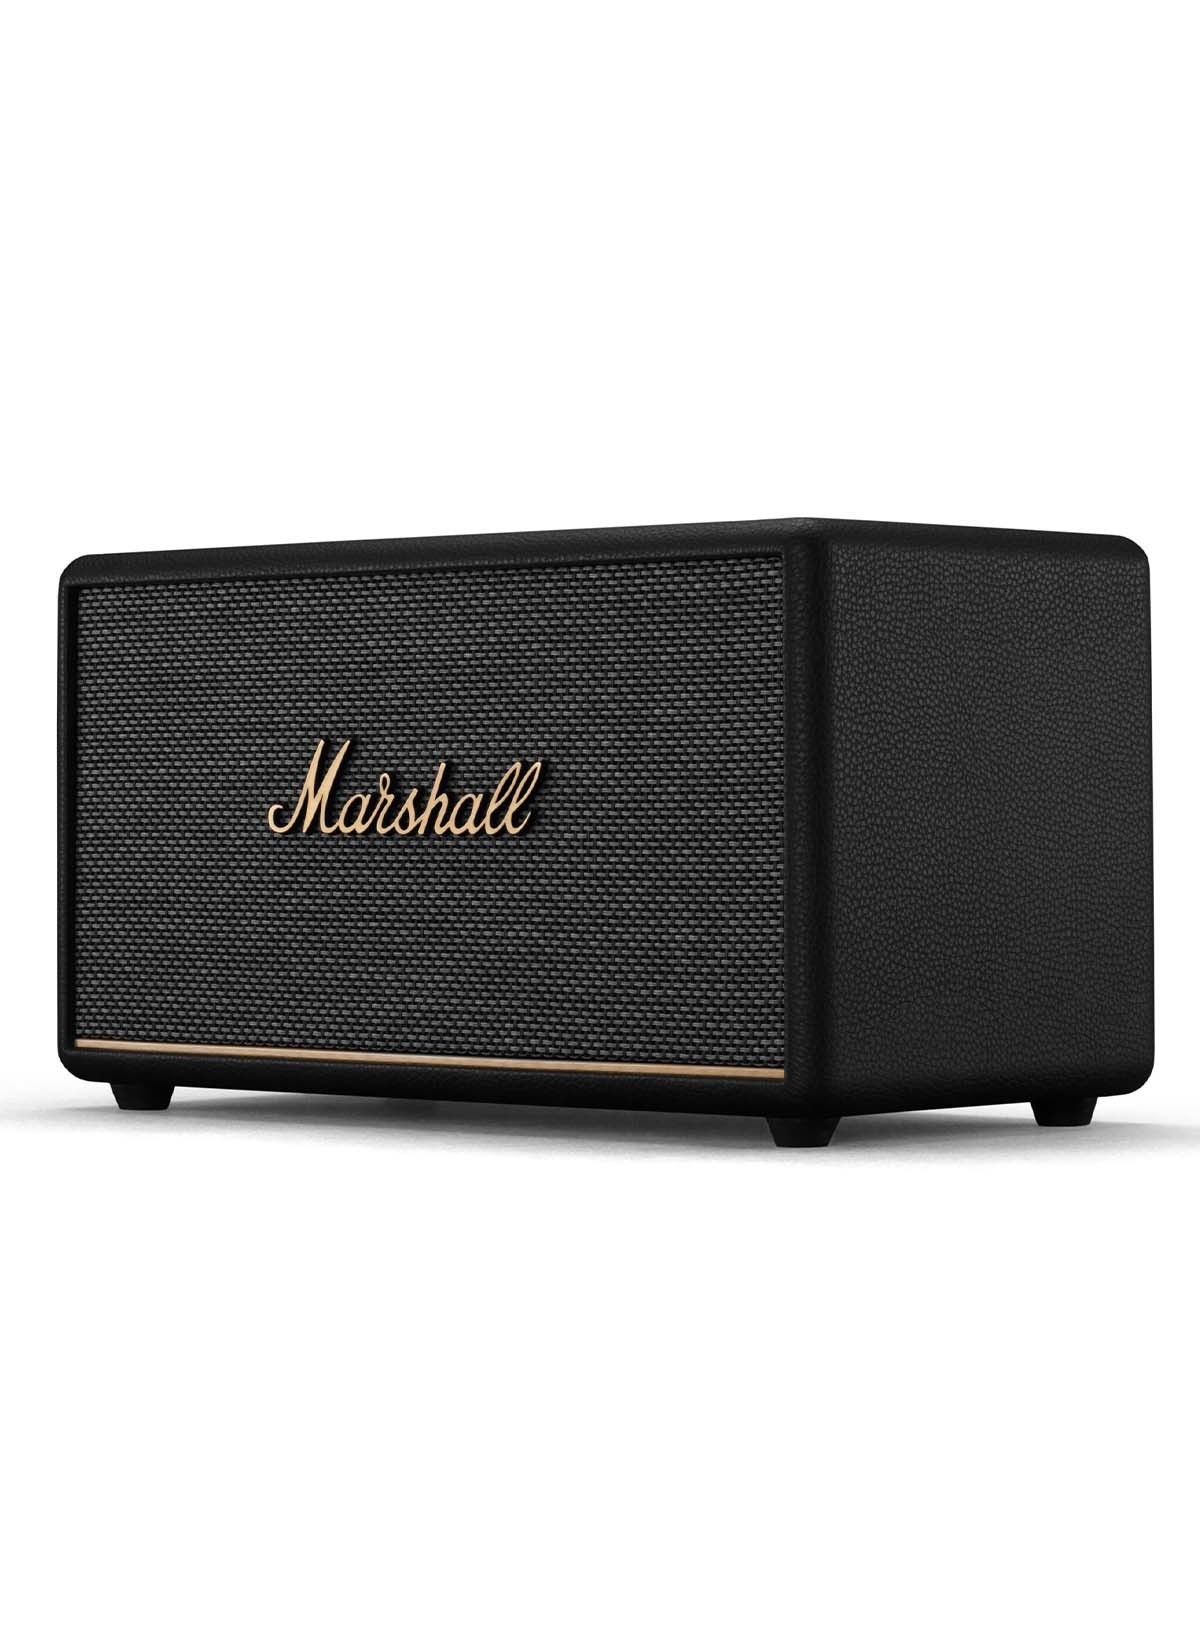 Marshall Stanmore III BT Bluetooth-Lautsprecher, schwarz